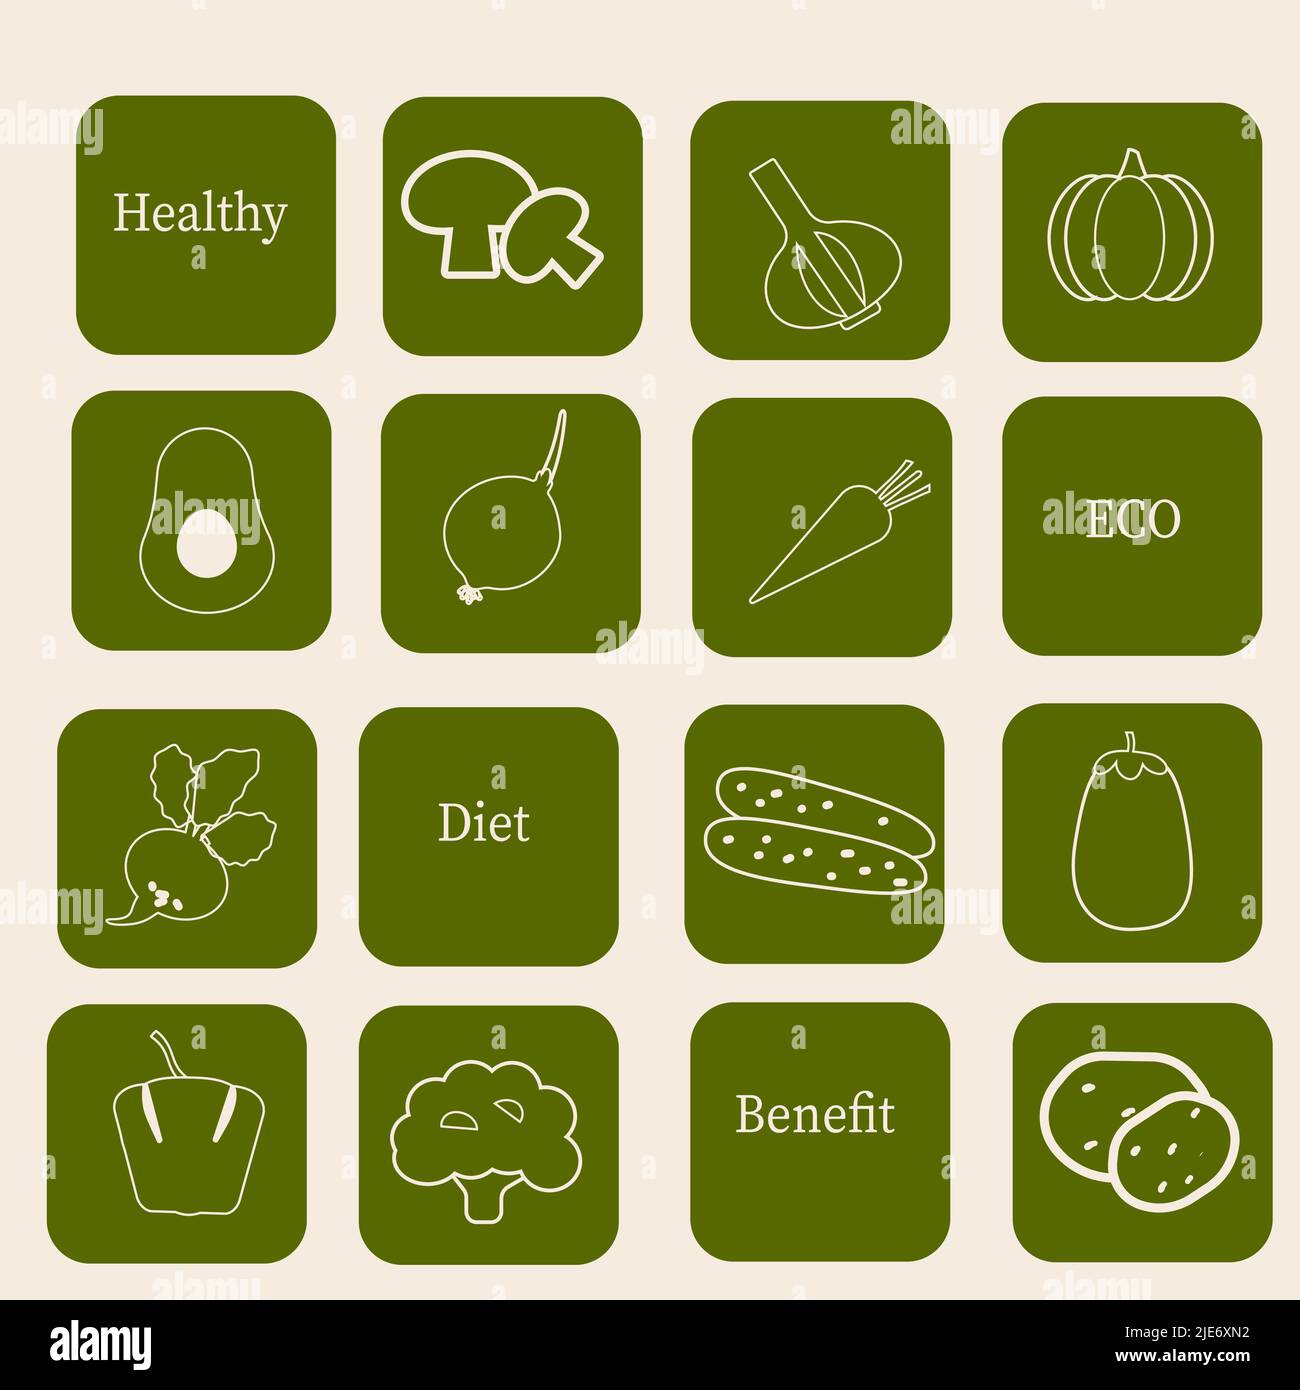 Sammlung von Sticker mit Gemüse-Icons auf grün. Gesunde Ernährung Konzept. Vektorgrafiken. Stock Vektor